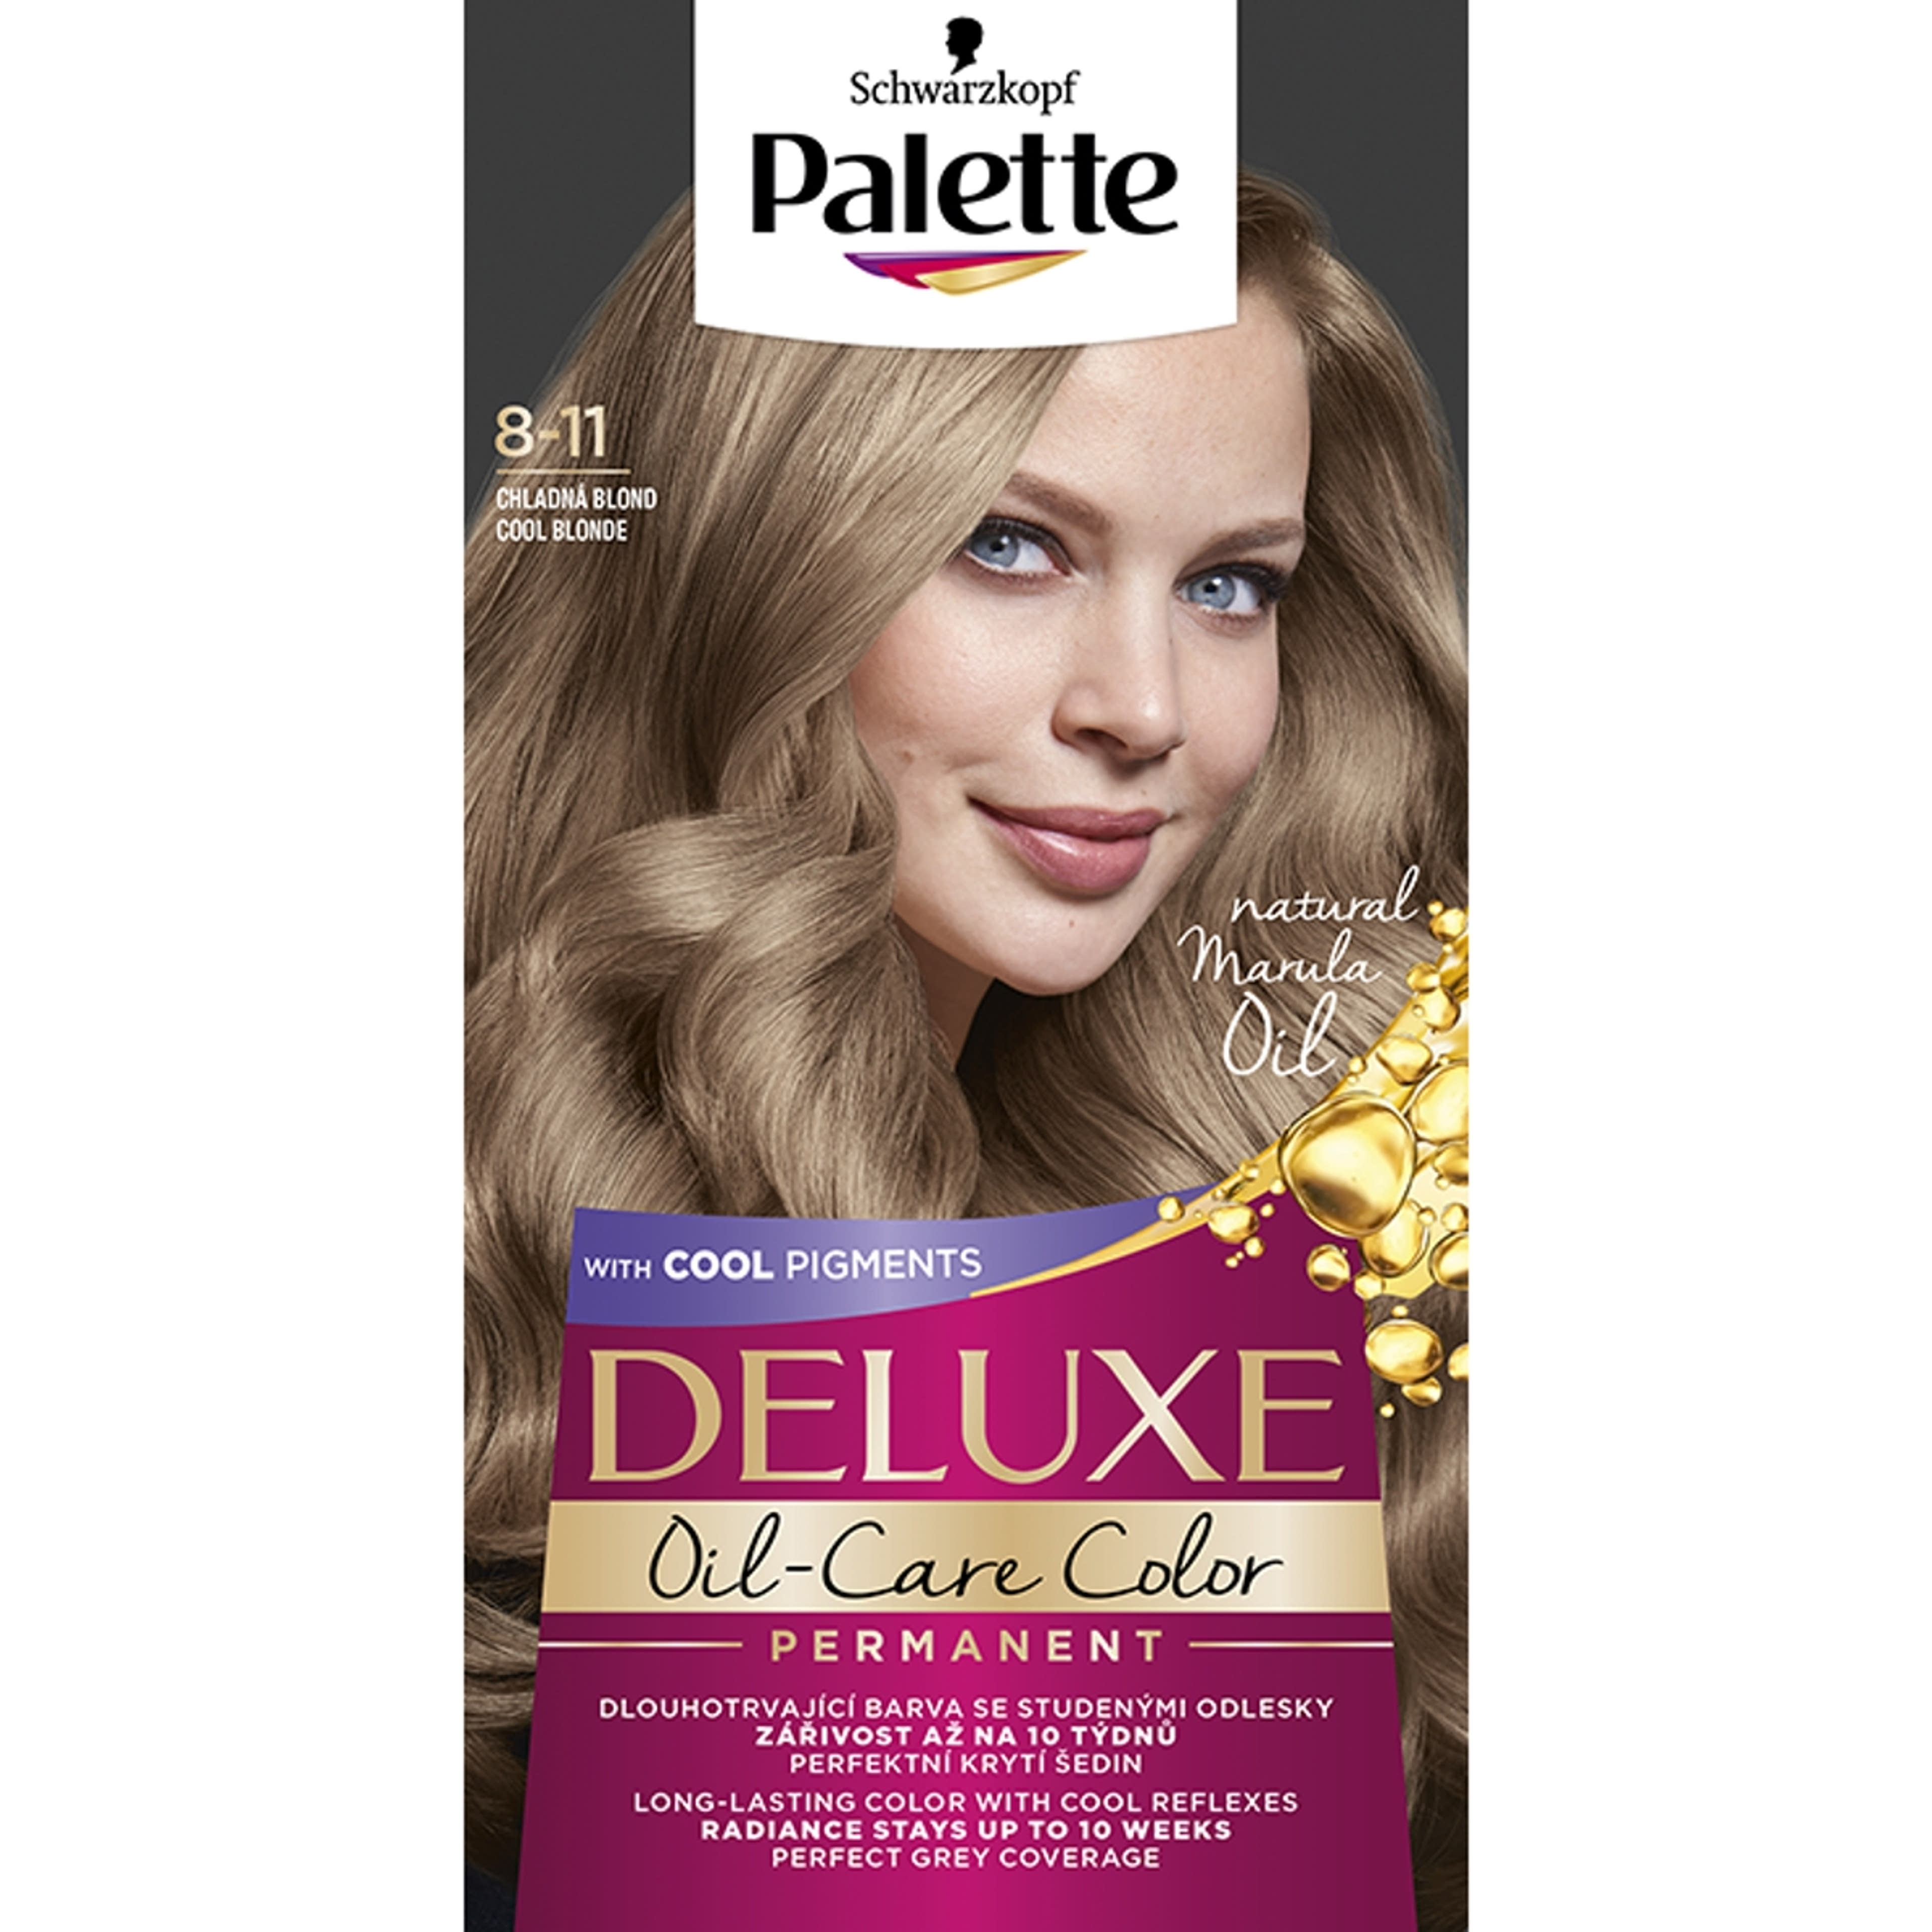 Palette Deluxe tartós hajfesték 8-11 hűvös természetes szőke - 1 db